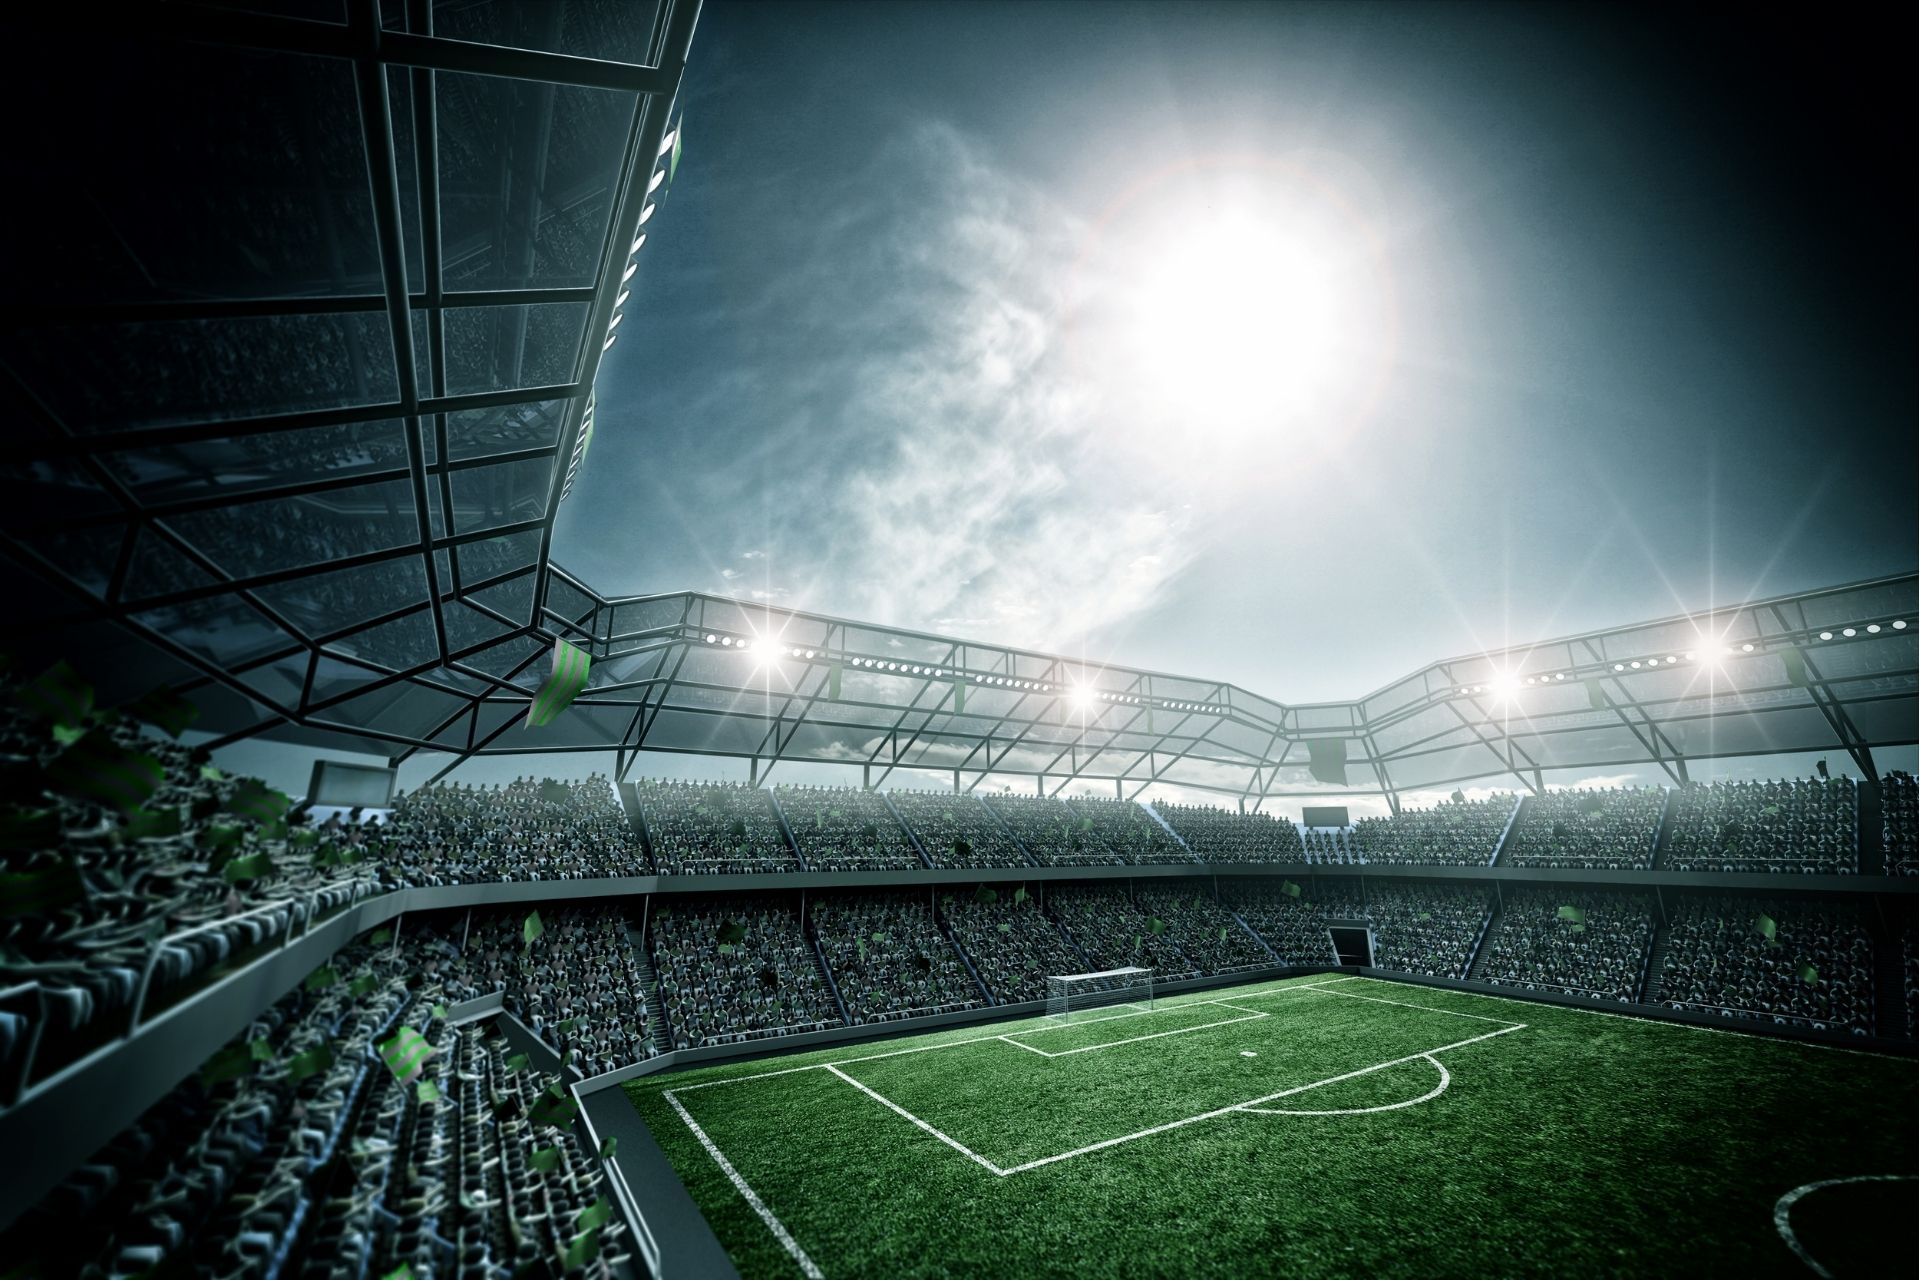 Na stadionie Stadion Miejski dnia 2023-03-31 18:30 odbyło się spotkanie Piast Gliwice kontra Gornik Zabrze - wynik końcowy 1-0